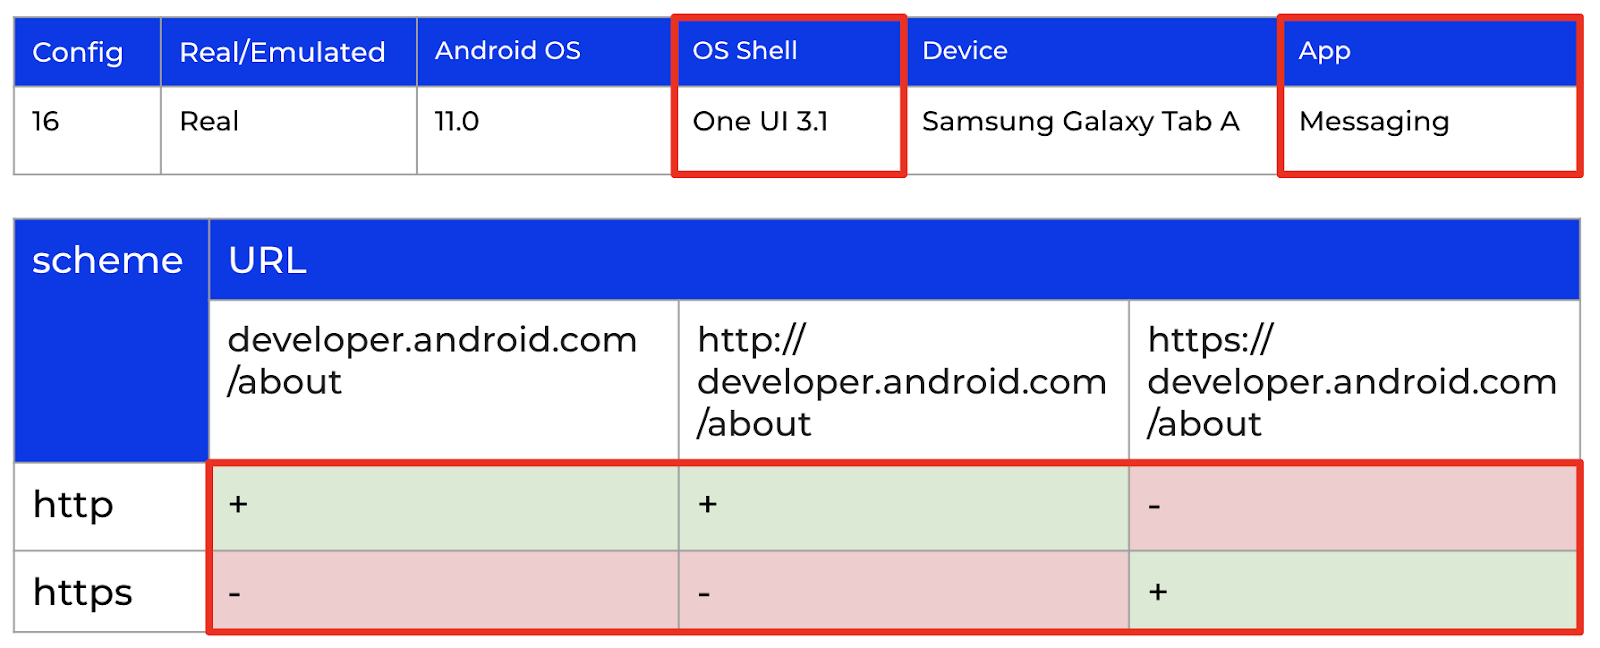 Результаты проверки гипотезы о влиянии оболочки Android ОС на встроенном СМС-клиенте на устройстве с оболочкой One UI 3.1 (Config 16).
